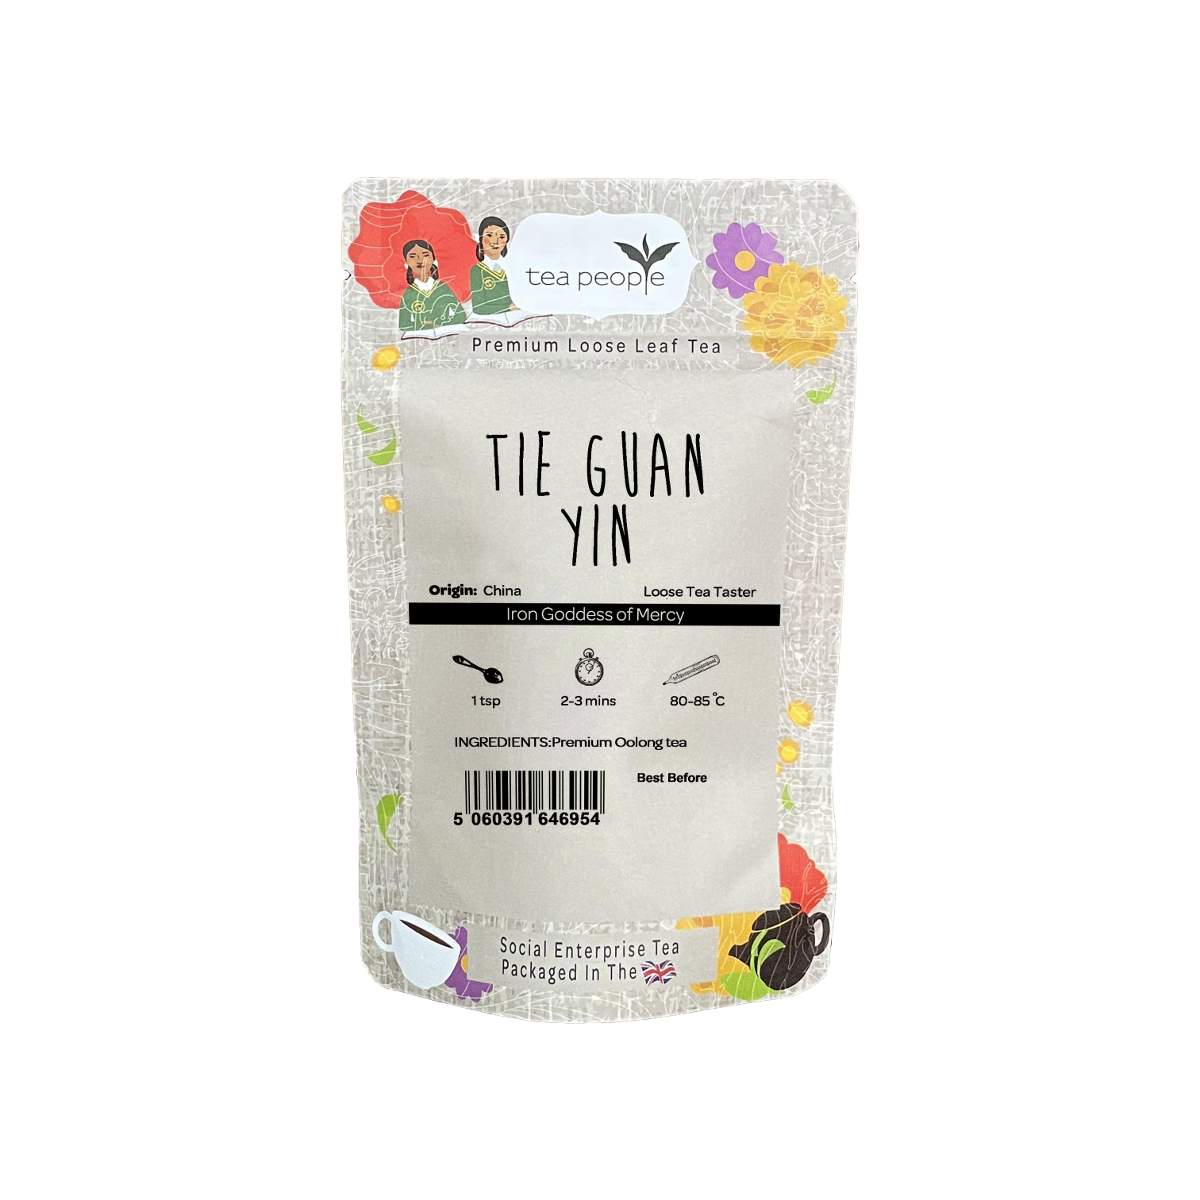 Tie Guan Yin - Loose Oolong Tea - Loose Tea Taster Pack